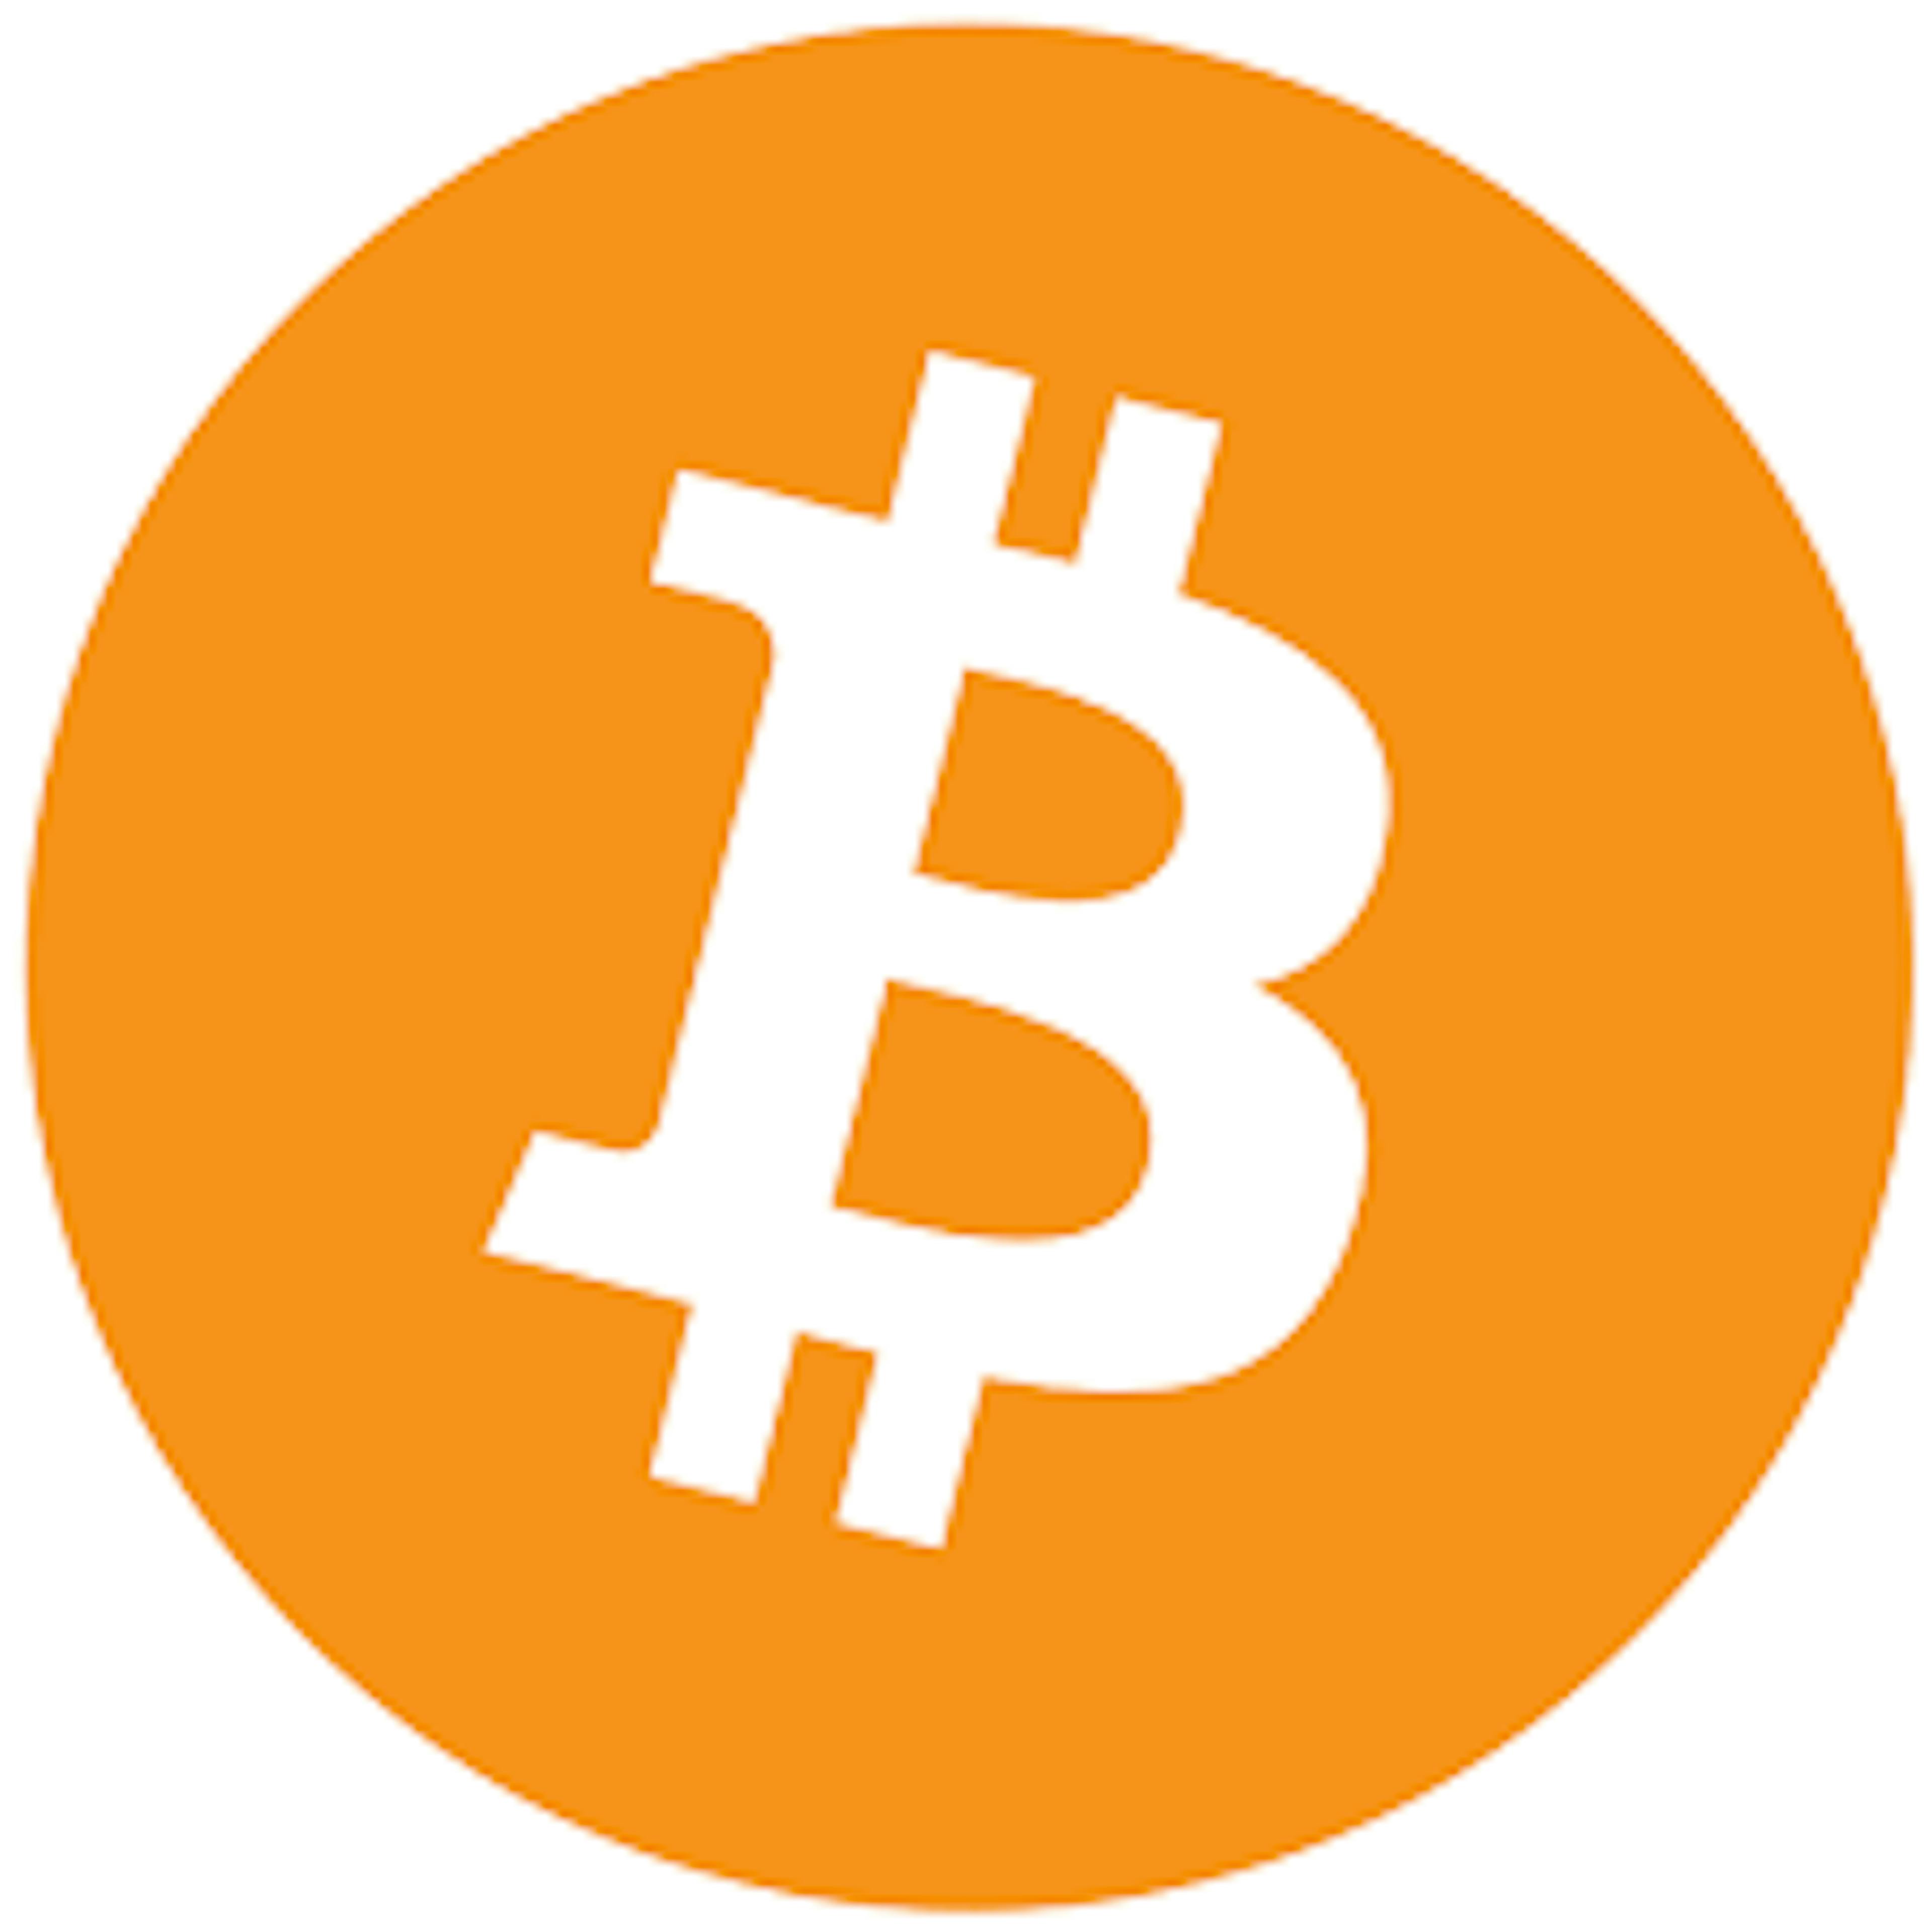 Bitcoin payment method